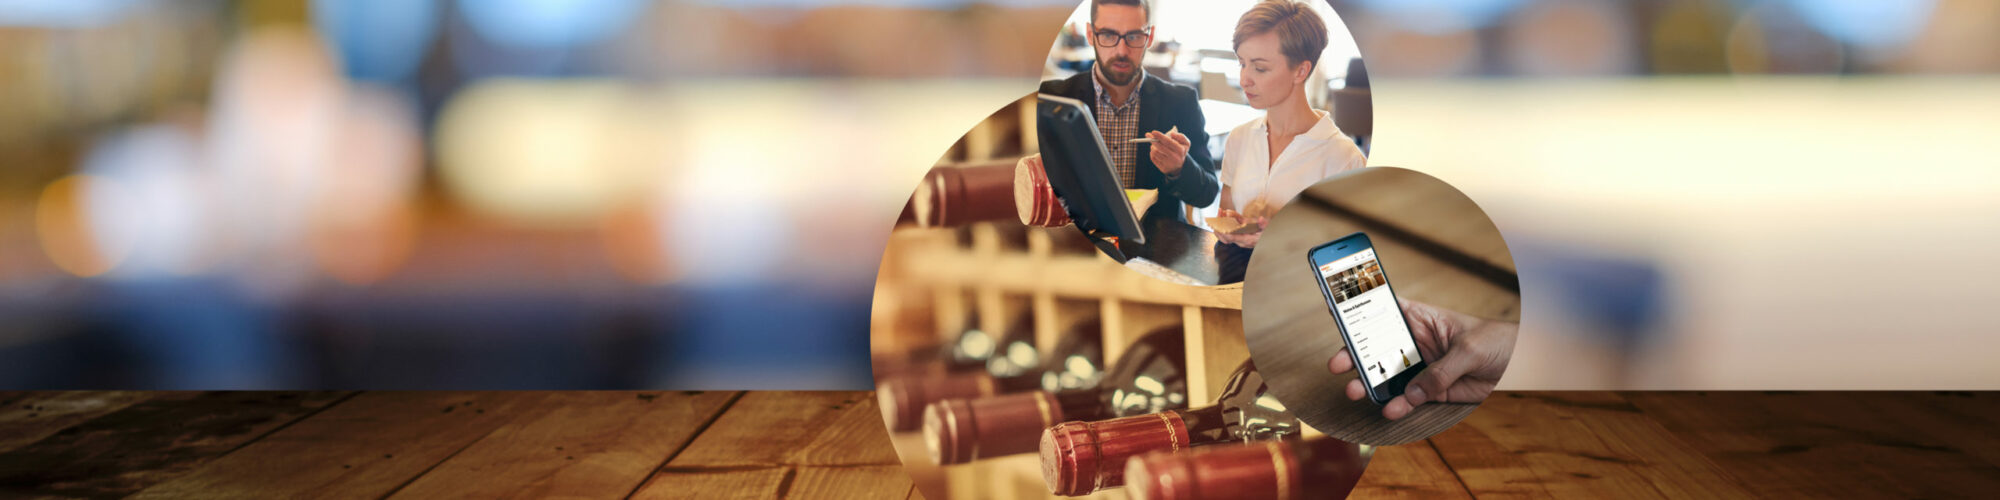 Bild von zwei Personen in einem Beratungsgespräch, daneben das Bild von einem Handy, auf dem ein Onlineshop geöffnet ist sowie von Weinflaschen in einem Weinregal, valantic Customer Experience (CX)